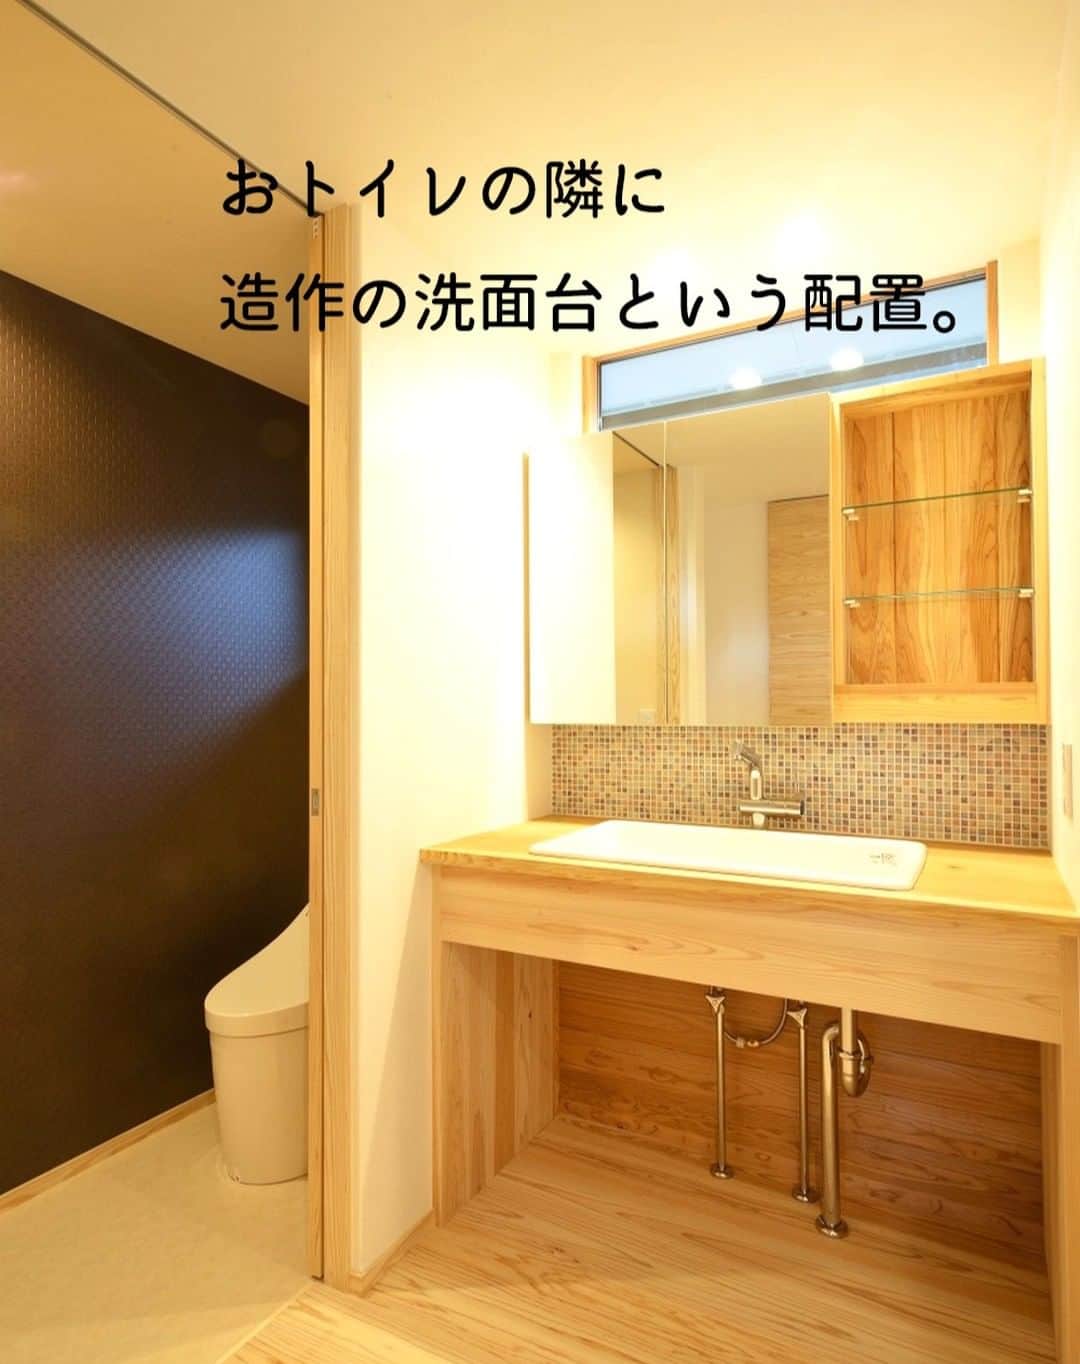 Yasuhiro Arimuraのインスタグラム：「おトイレの隣には造作の洗面台。 １部にタイルを張るとアクセントになって、オリジナリティーを演出しています。 自分だけの使い勝手のいい、洗面台。窓もあり、明るく清潔感があります。 トイレはがらりと雰囲気を変えて。  more photos... 👉 @yasuhiro.arimura #光と風 #sumais #リビング #明るいリビング #注文住宅 #家づくり #平屋のお家 #造作建具 #ウッドデッキ #マイホーム #マイホーム計画 #木の家 #住まい #新築 #オーダーメイド住宅 #鹿児島 #工務店 #工務店がつくる家 #工務店だからつくれる家 #設計事務所 #子育て #自然素材 #賃挽き製材 #デザイン #暮らし #暮らしを楽しむ #シンプルな暮らし #丁寧な暮らし #田舎暮らし #instahouse」